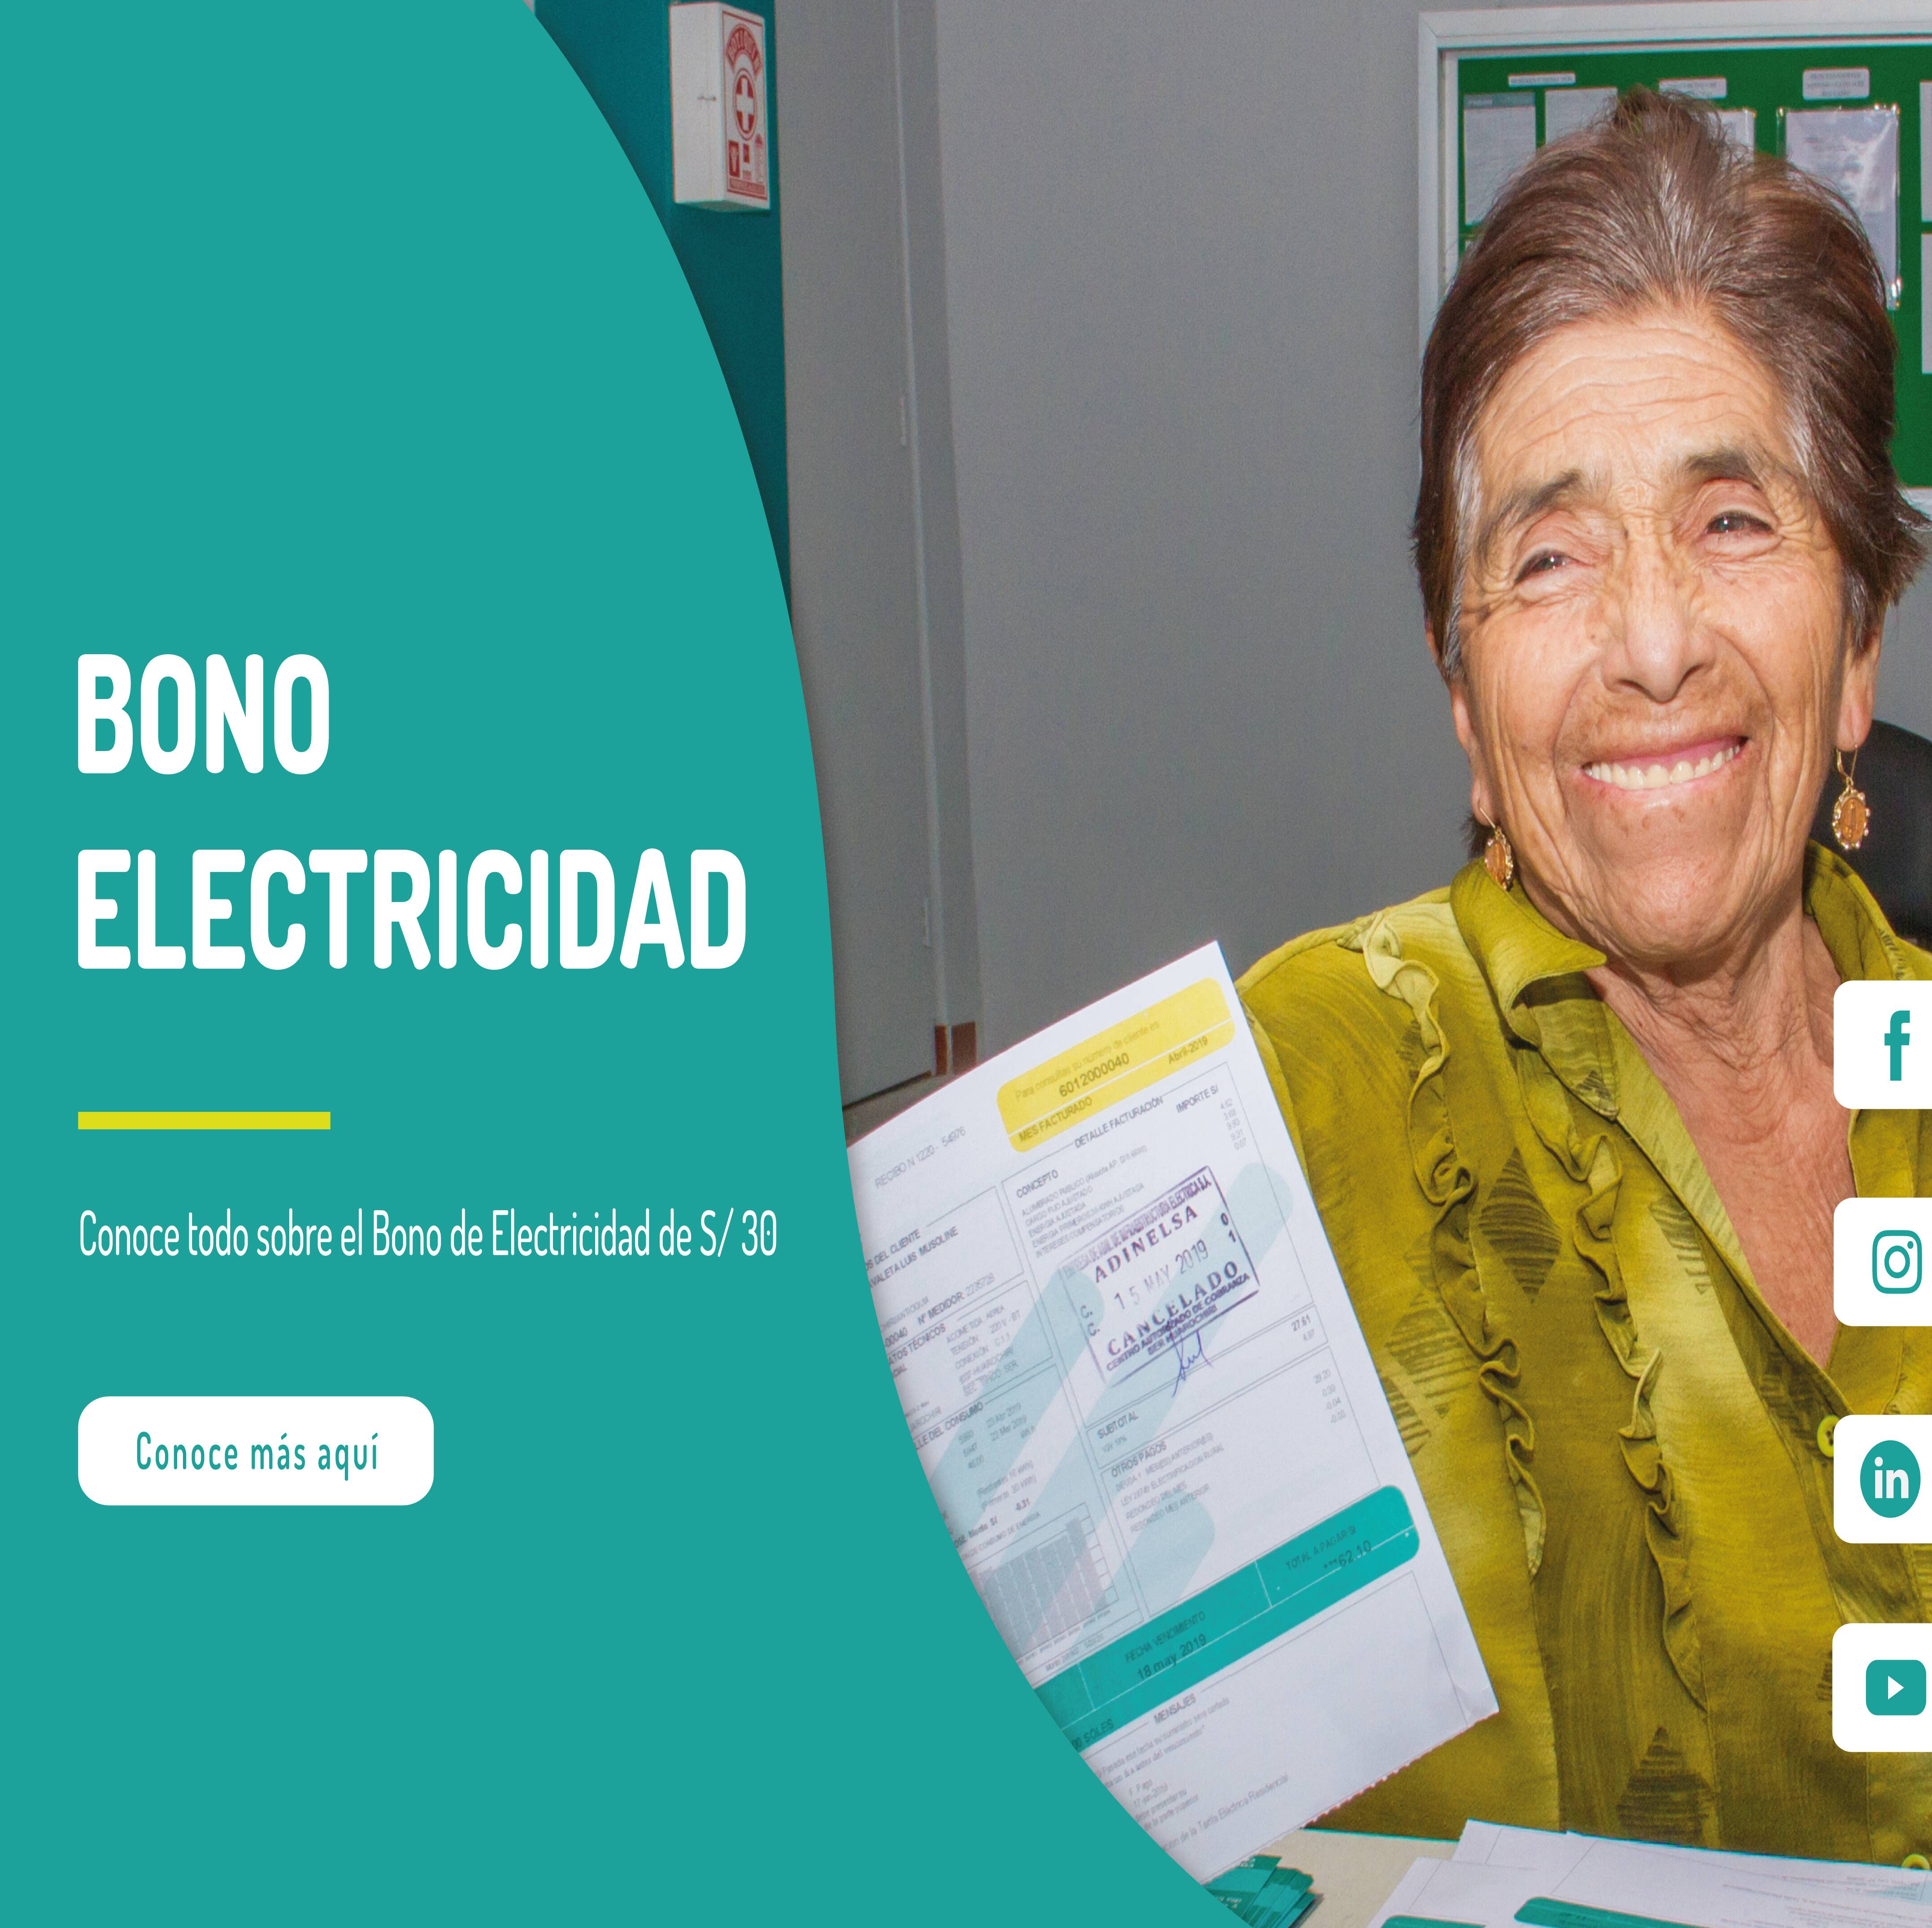 Bono electricidad